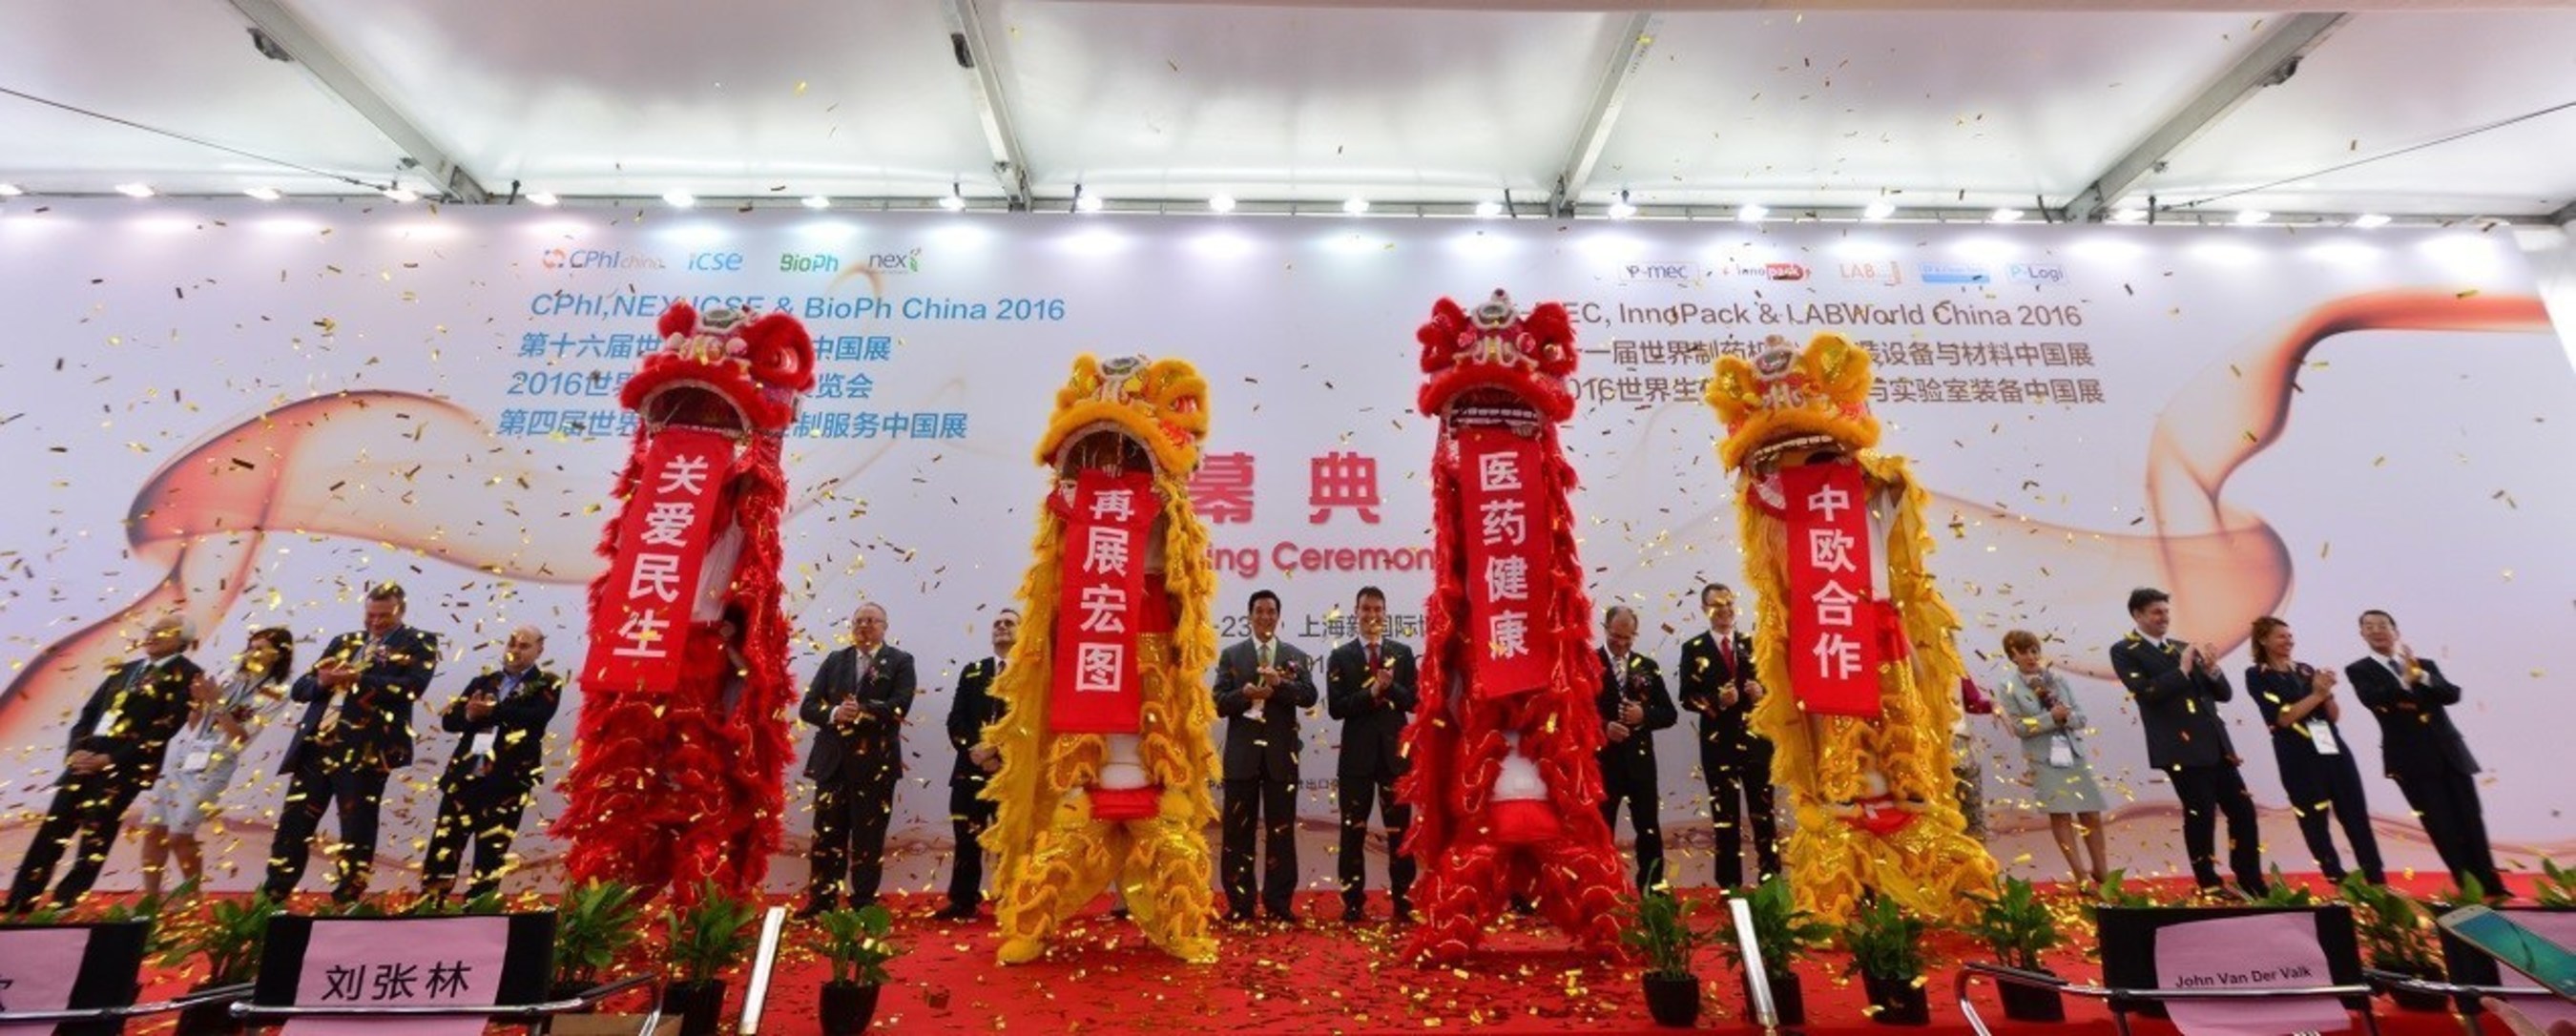 Grand Opening of CPhI & P-MEC China 2016